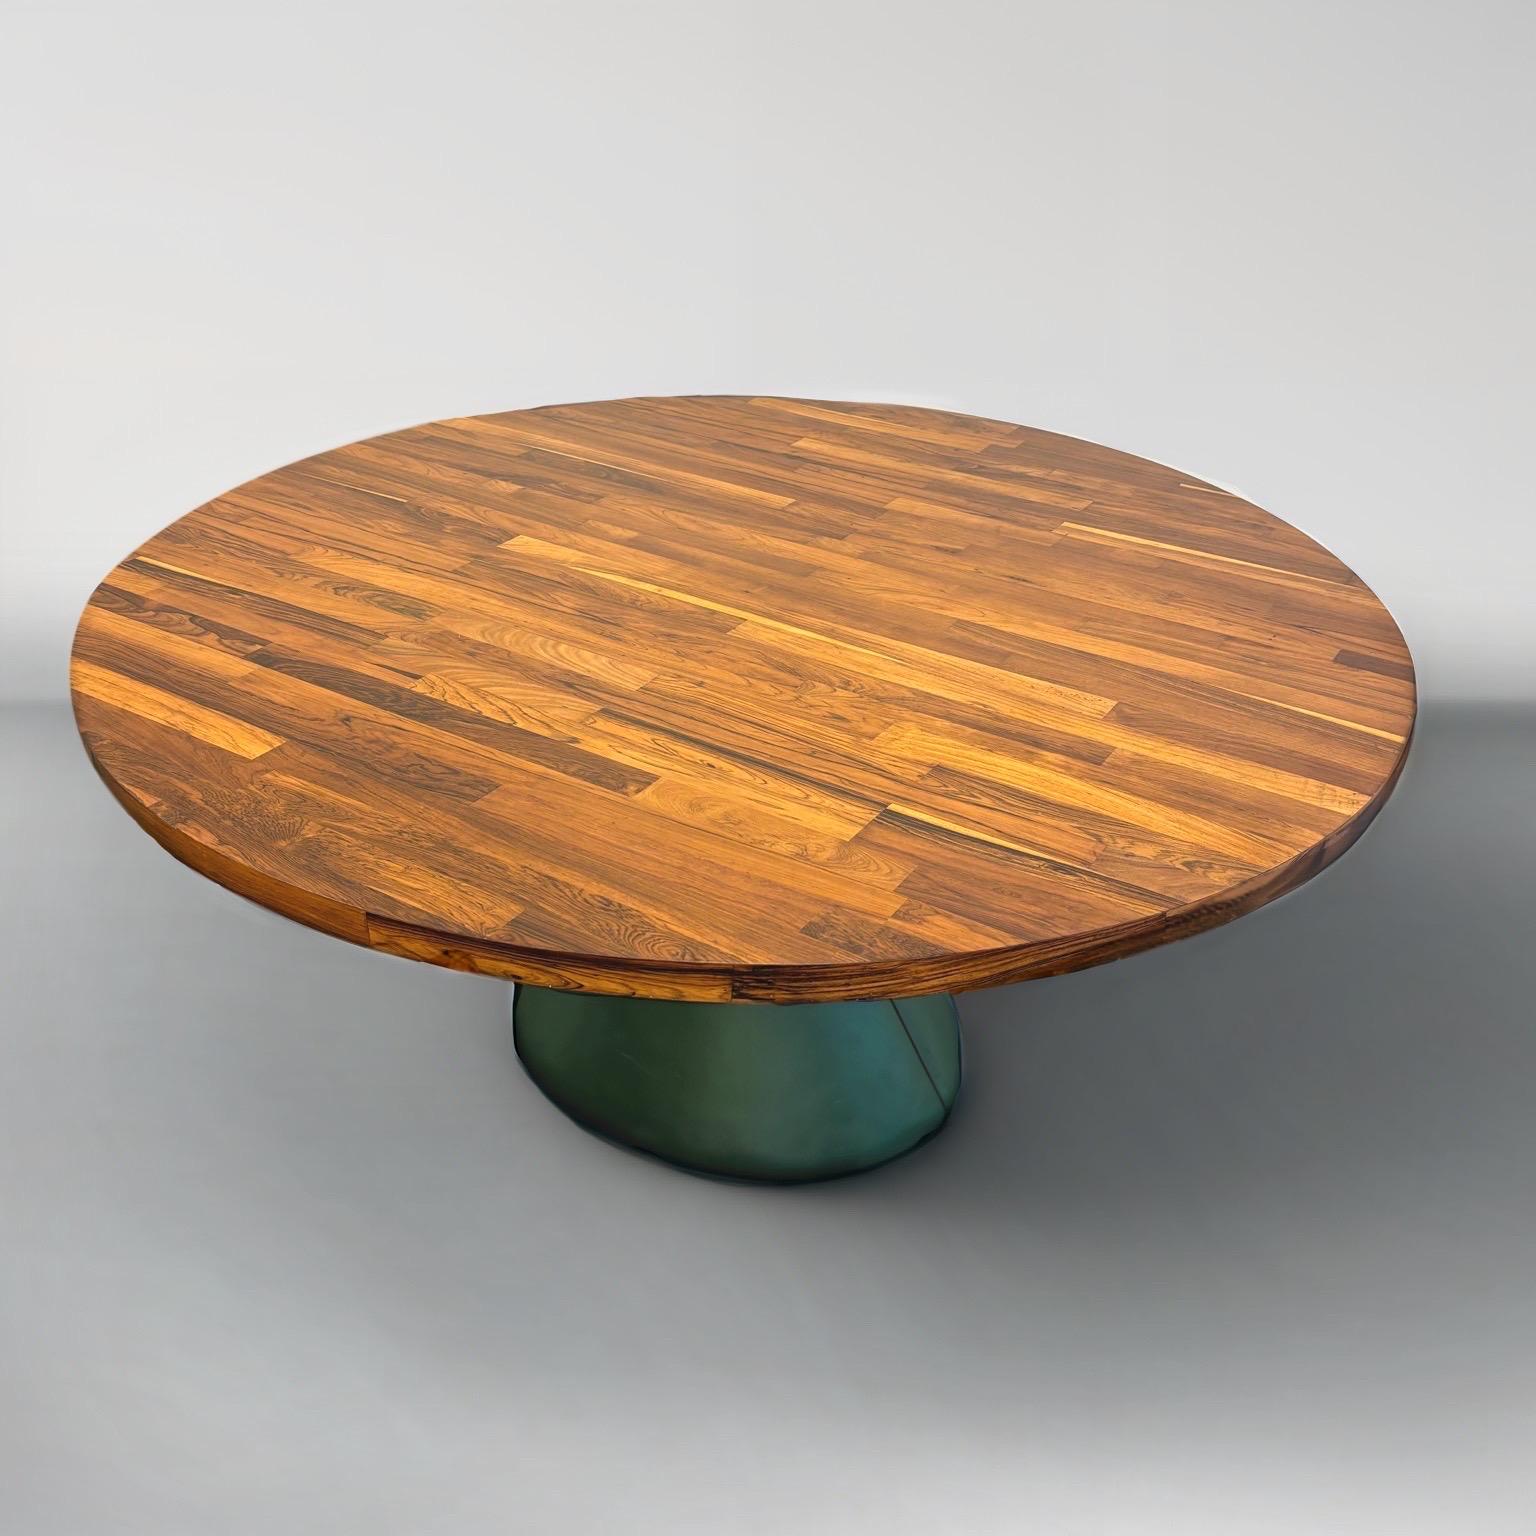 Table de salle à manger ronde en bois et cuir de Jorge Zalszupin, 1960.

Ce site  Table de salle à manger Guaruja du célèbre designer Jorge Zalszupin (1922 - 2020)  témoigne d'une élégance raffinée. 
Fabriqué avec une attention méticuleuse aux